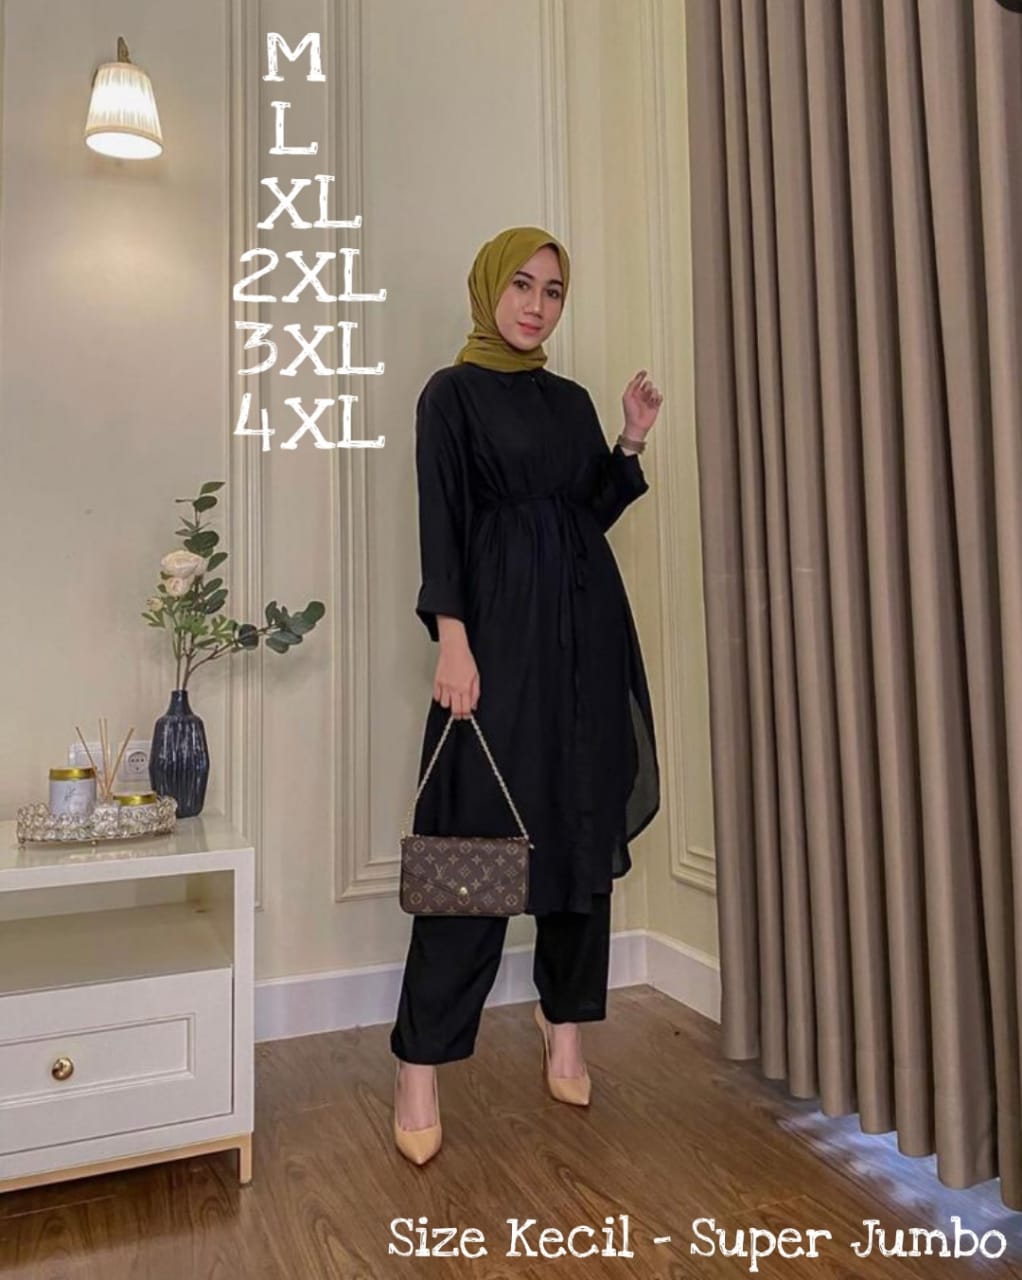 Promo Baju Gamis Muslimah Marketplace Bulan ini